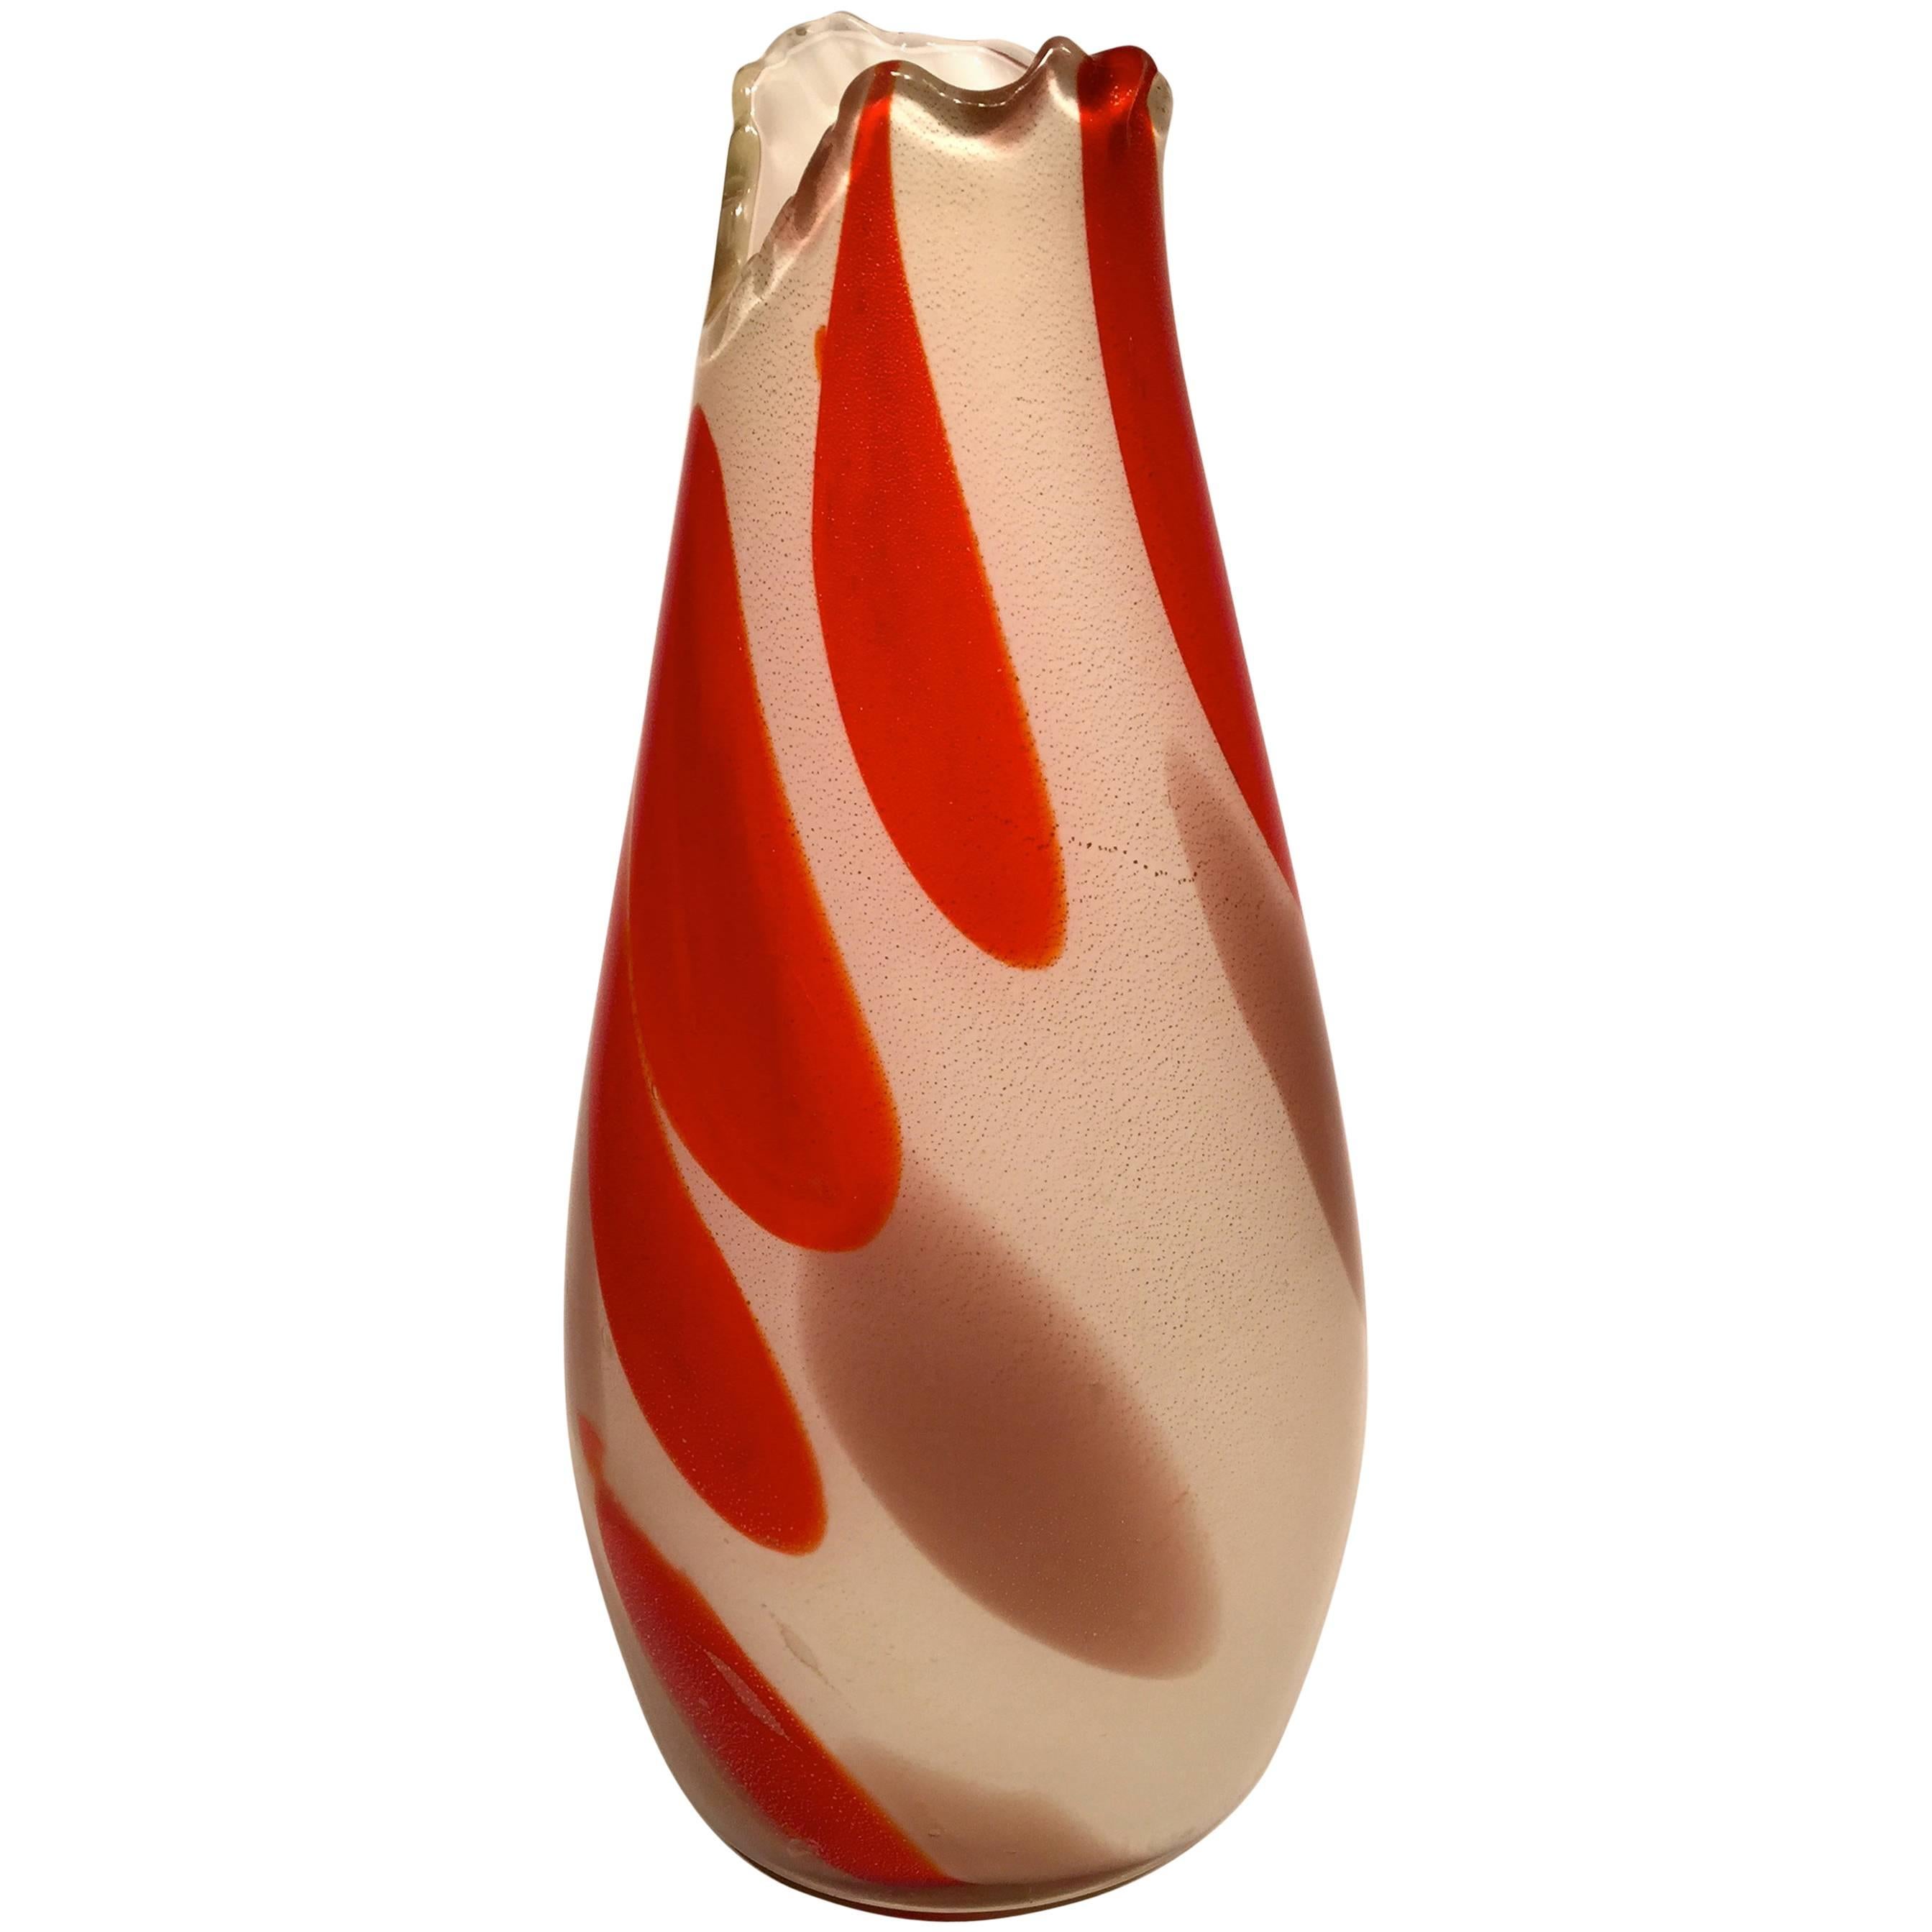 ARCHIMEDE SEGUSO Vase in Artistic Blown Glass of Murano, circa 1950 For Sale